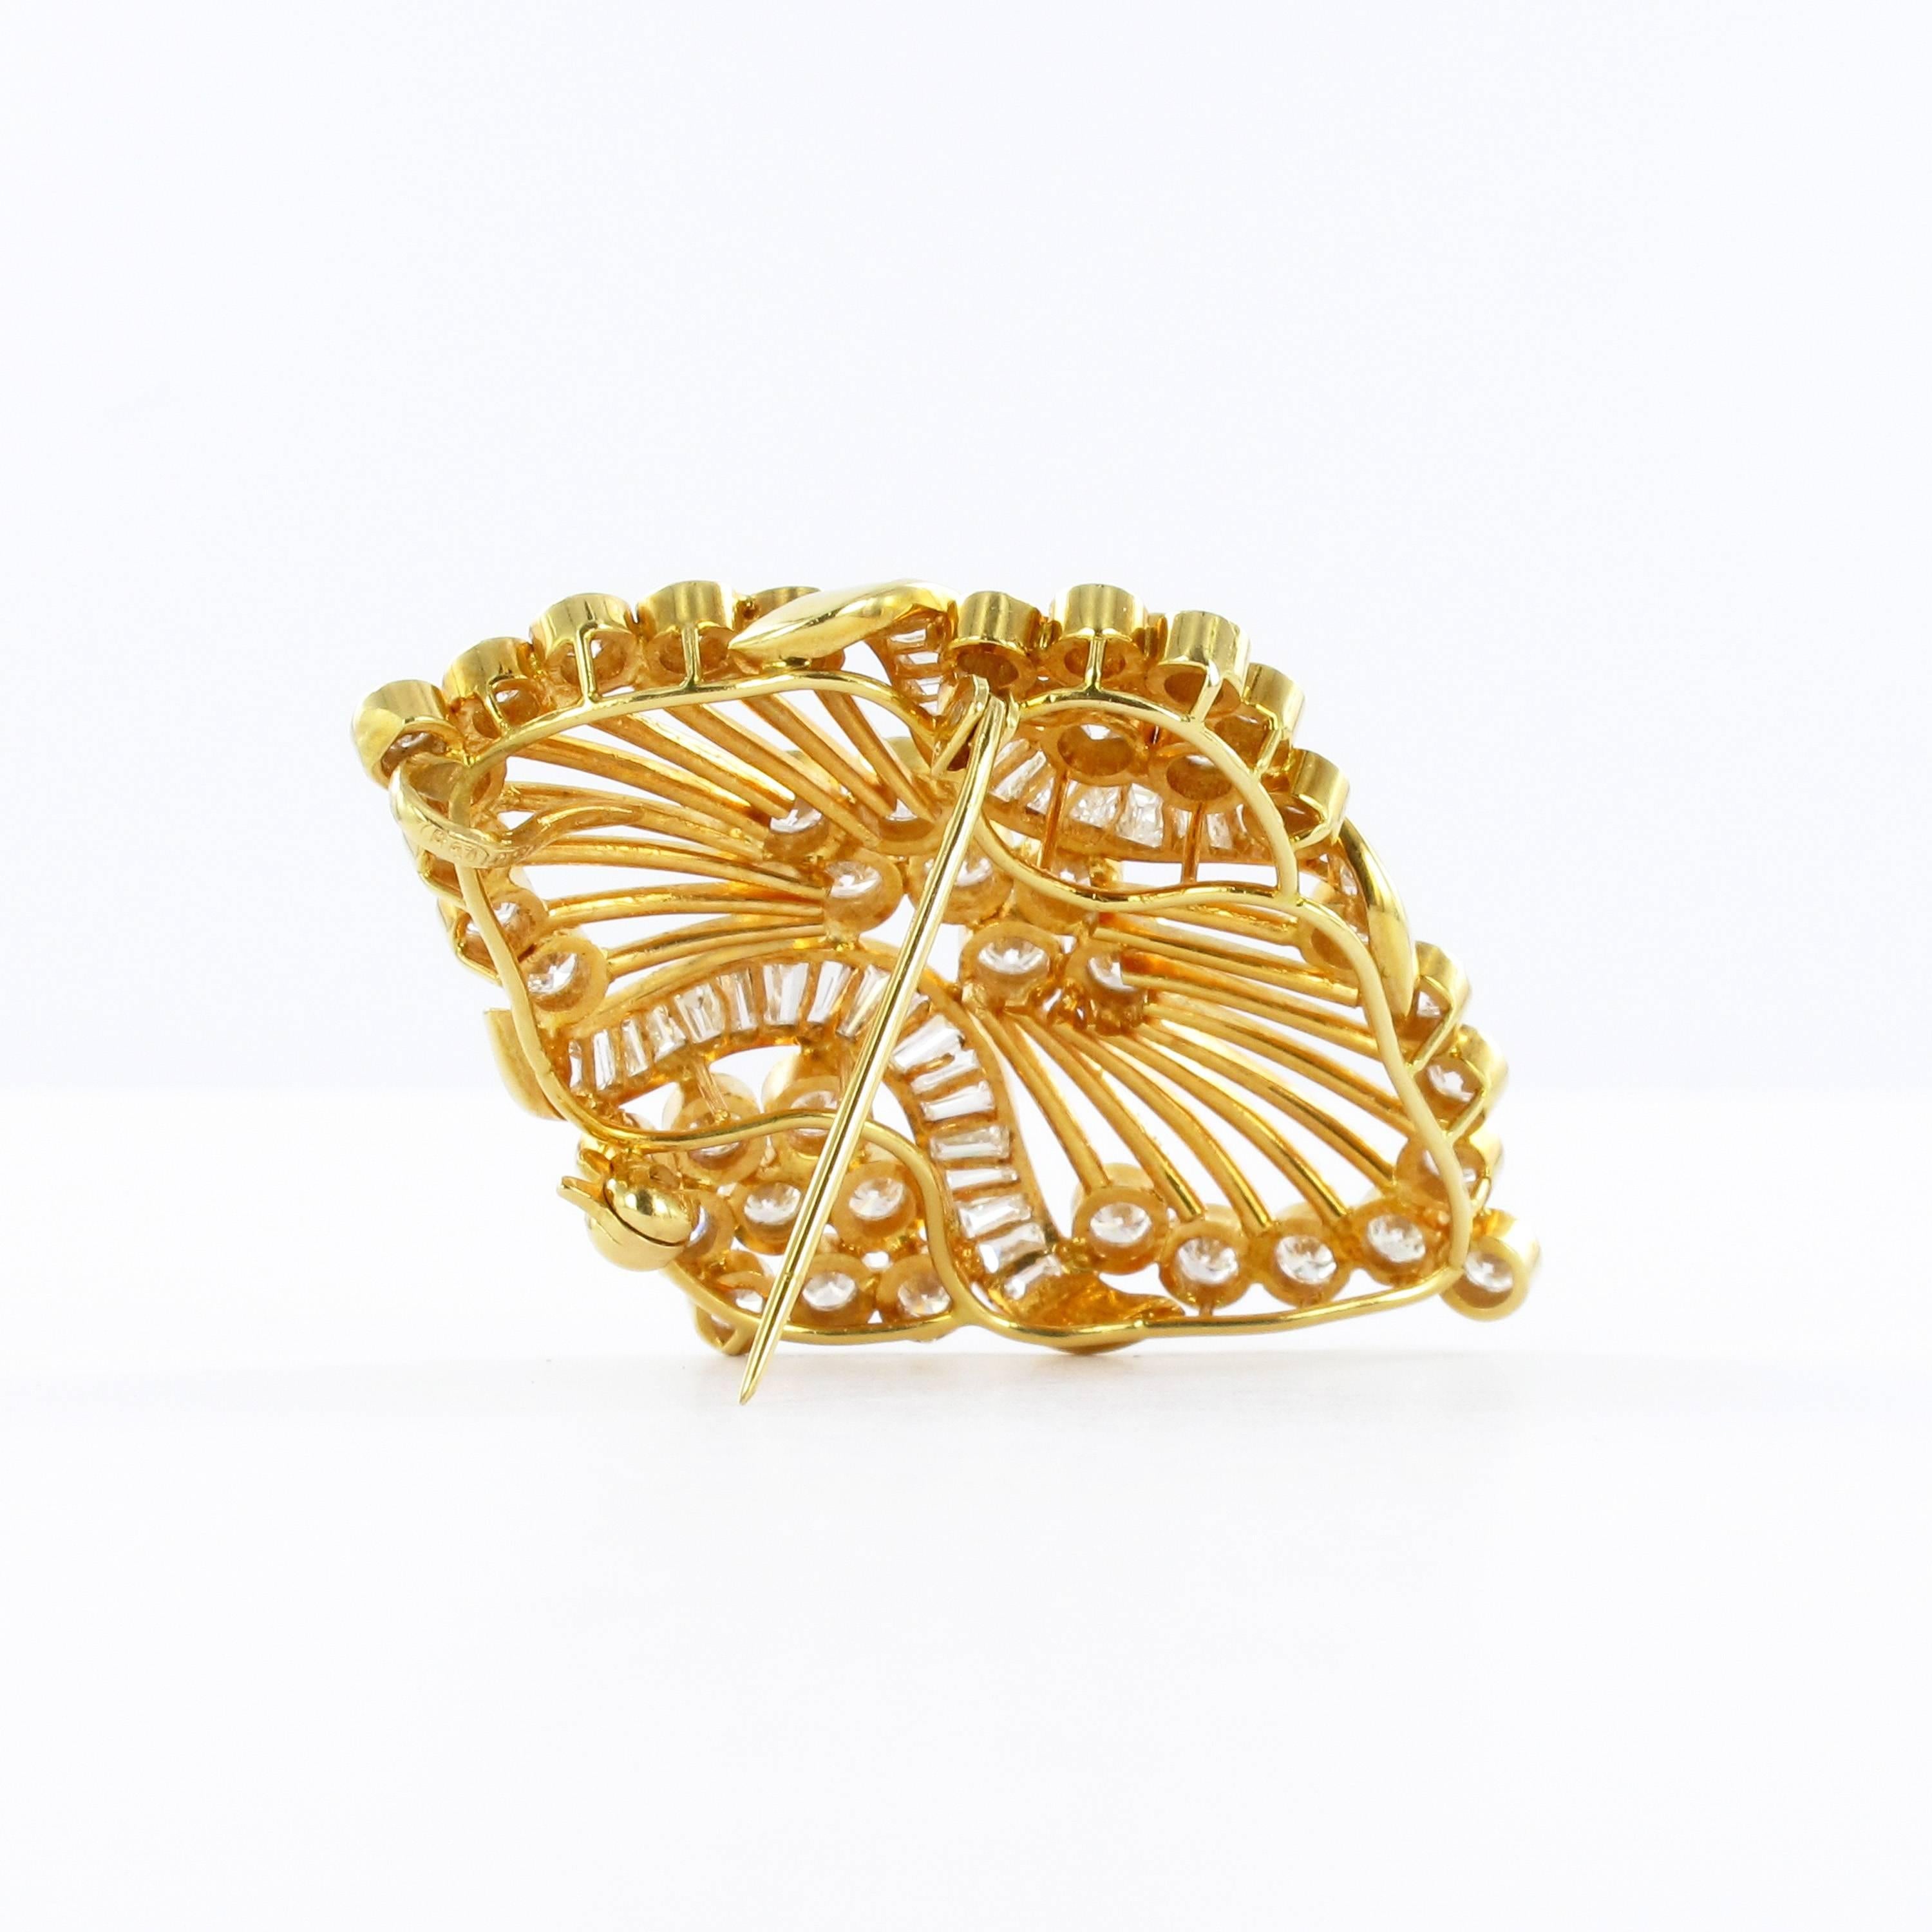 Women's or Men's Gold Diamond Flower Pendant or Brooch